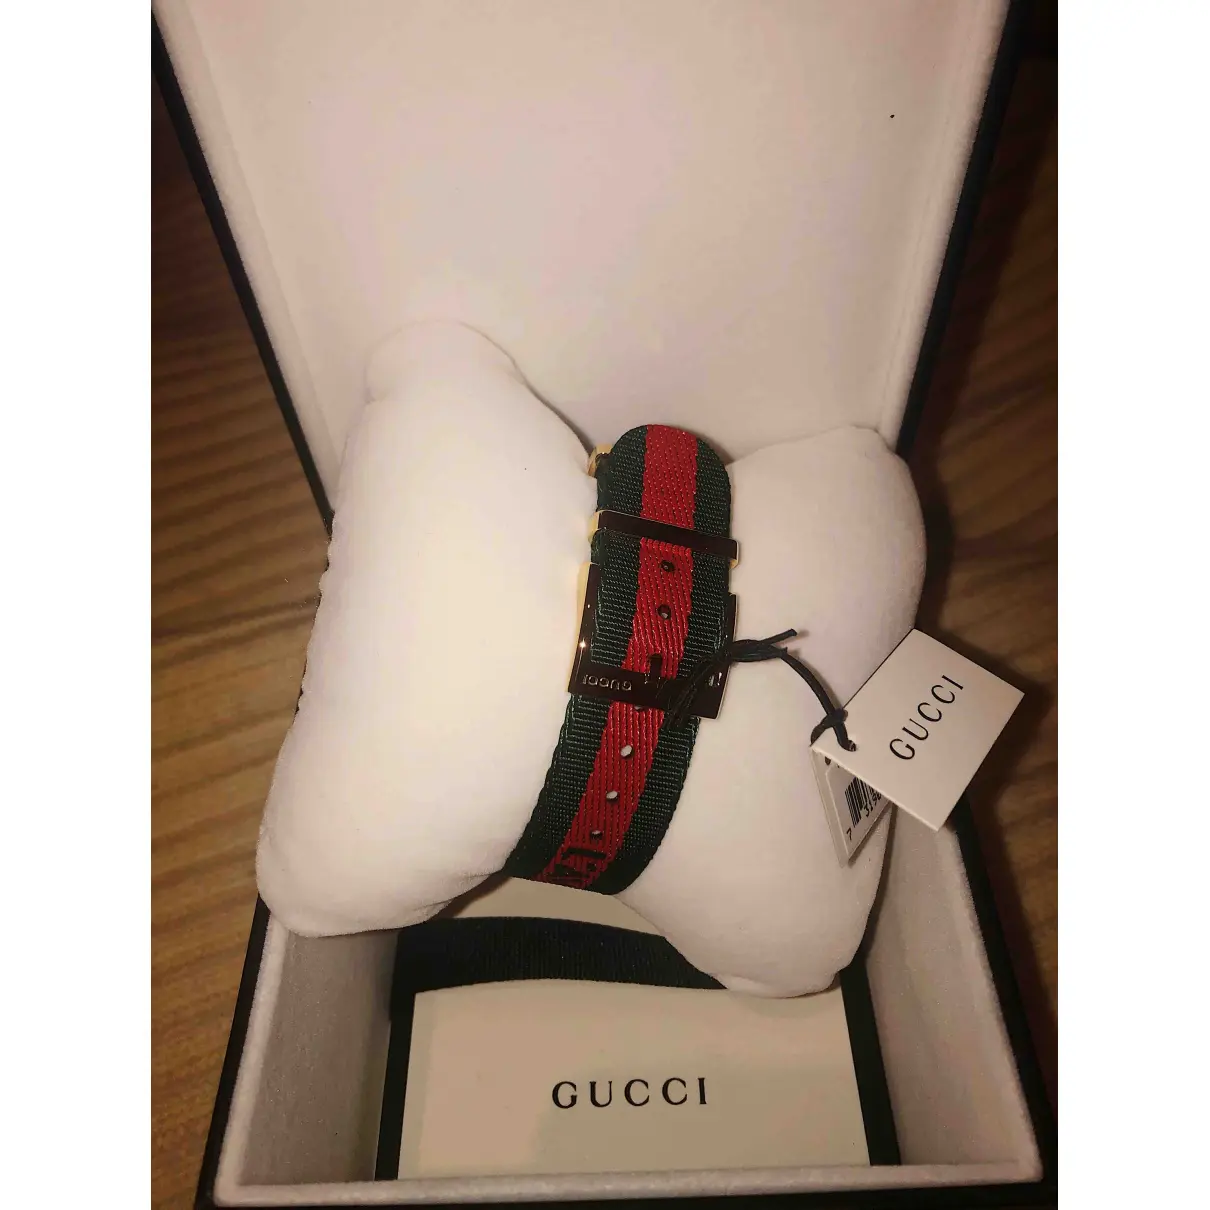 Buy Gucci Le Marché des Merveilles watch online